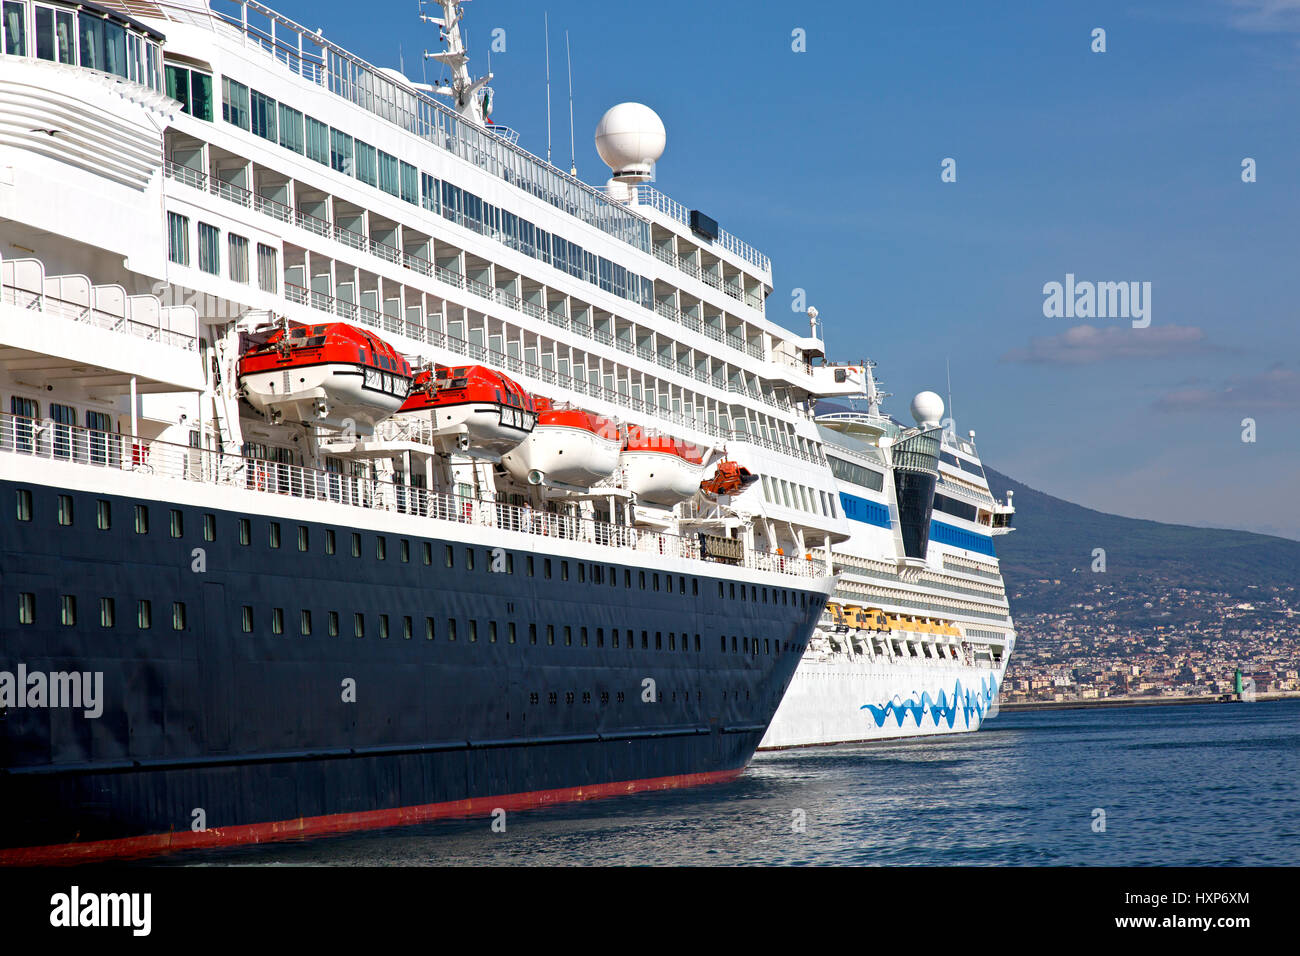 Nápoles, Italia, 5 de septiembre, 2016: Dos buques de crucero en puerto theNaples, uno de los destinos turísticos más importantes de la cuenca mediterránea Foto de stock